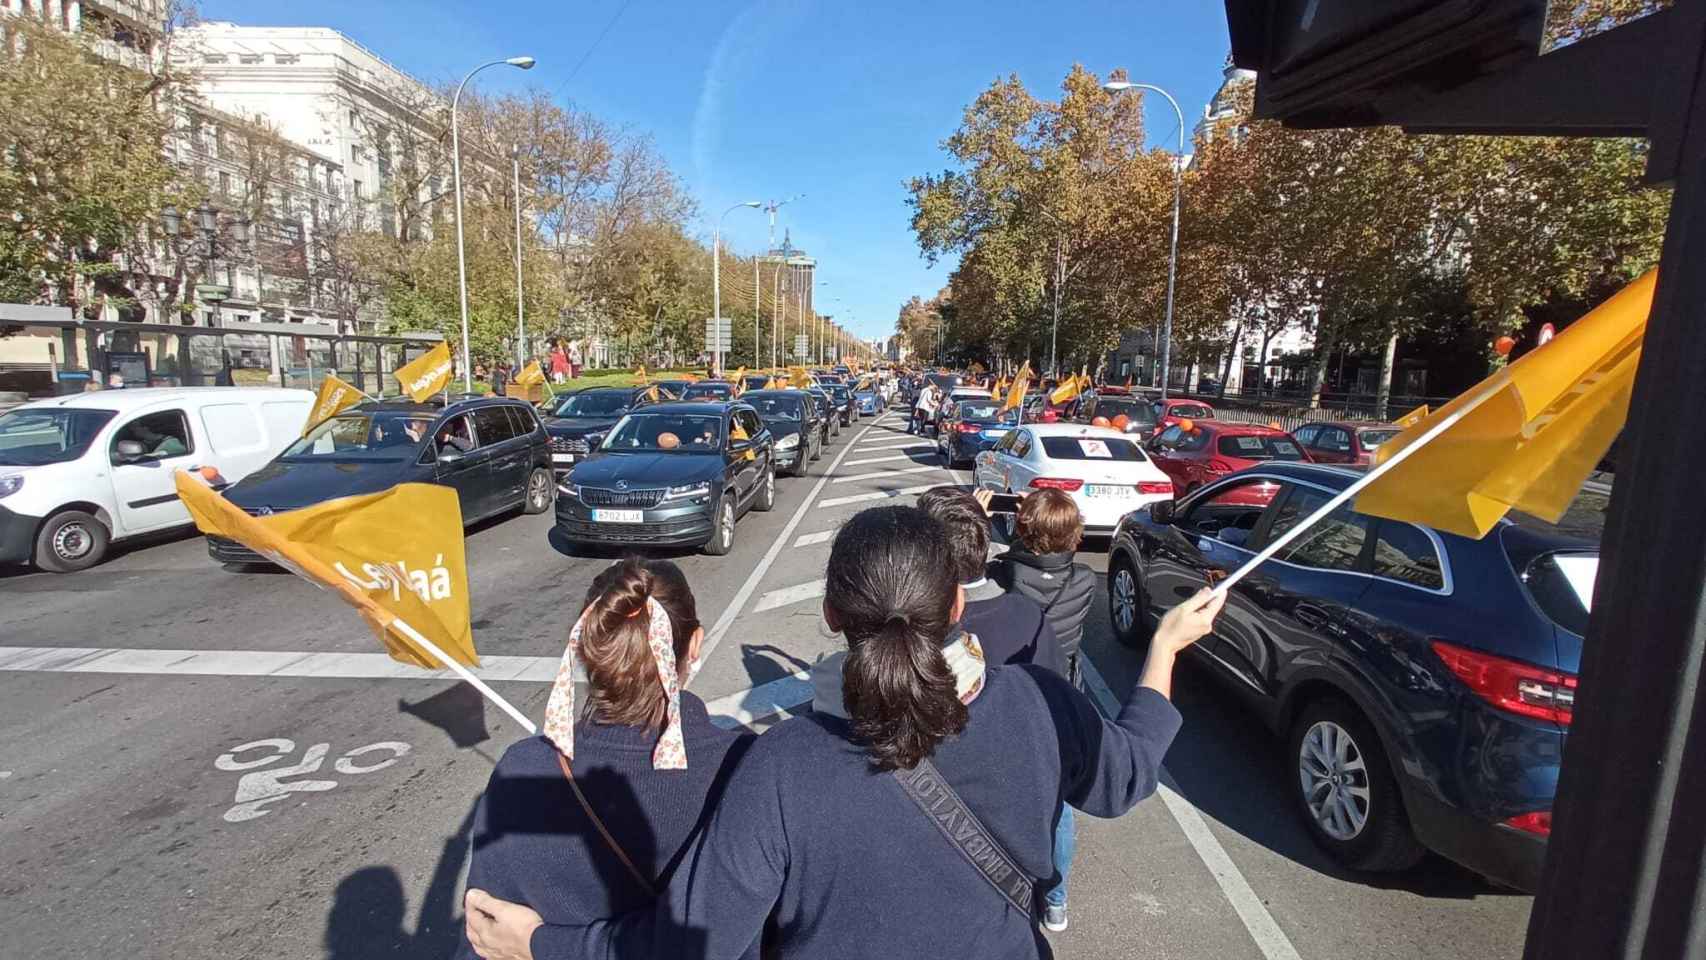 Todo el Eje Prado-Recoletos-Castellana, atascado de vehículos contra la Ley Celaá.